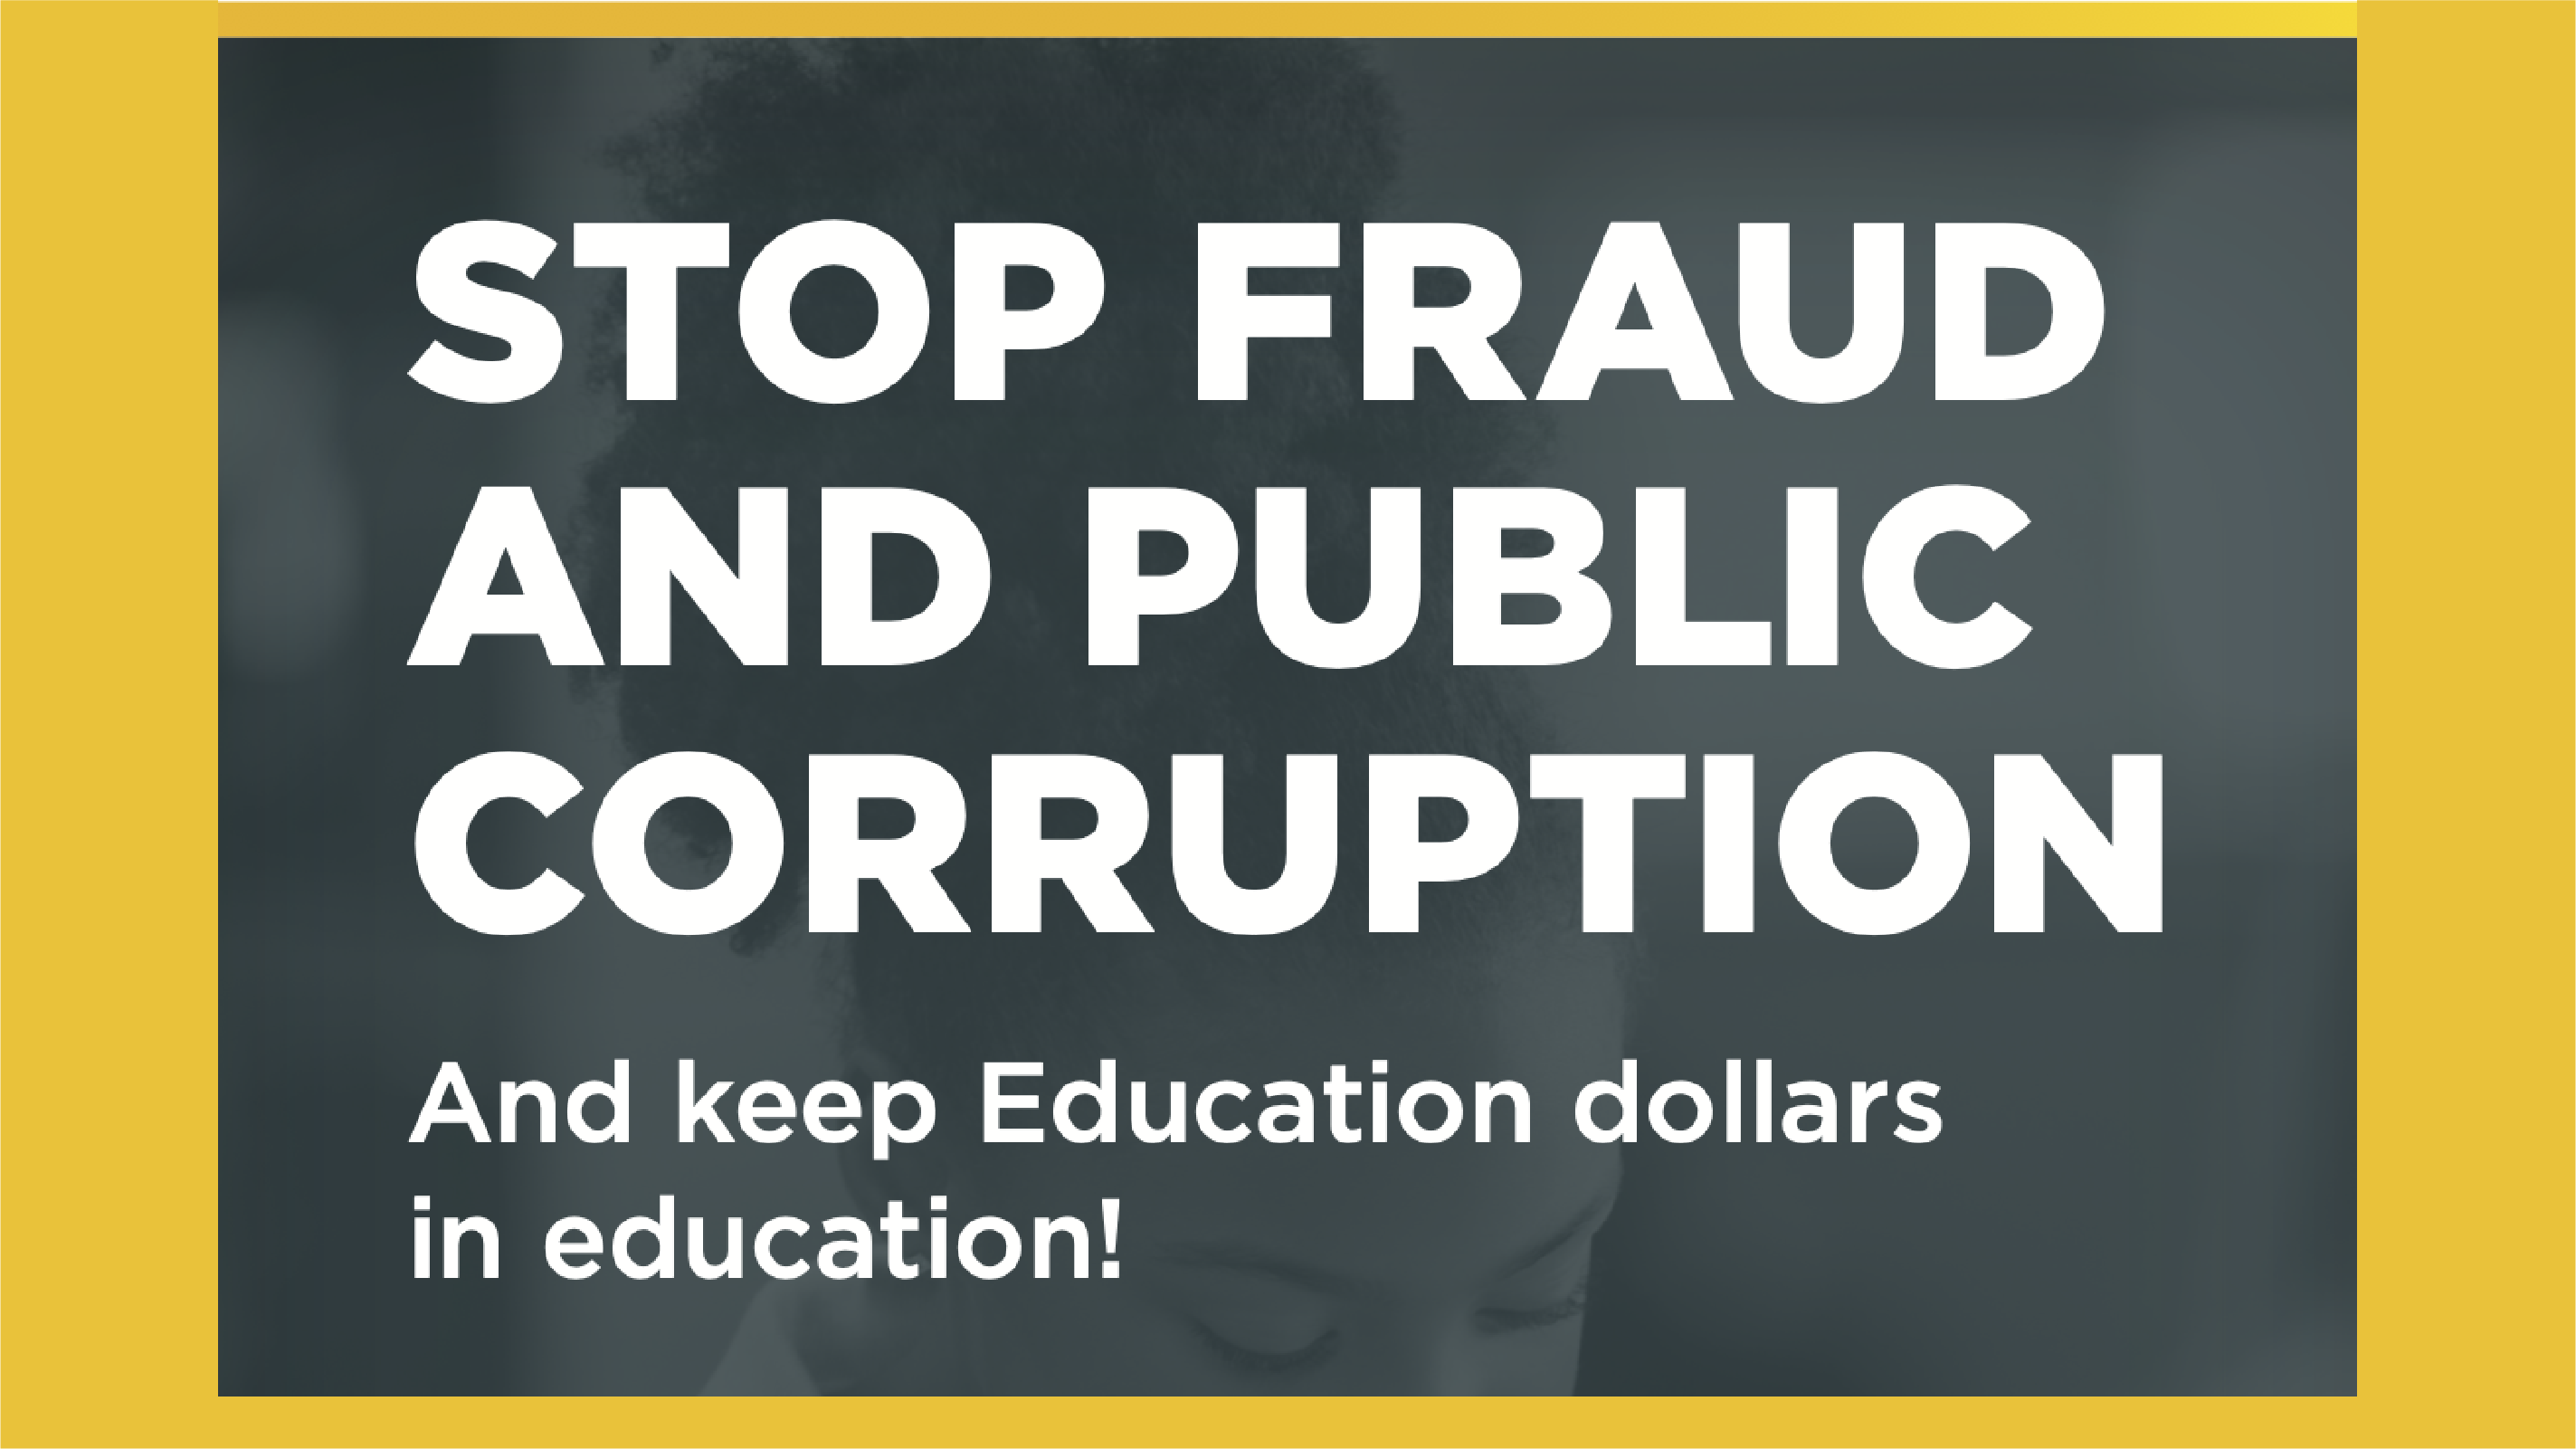 Report Fraud: Keep Education Dollars in Education